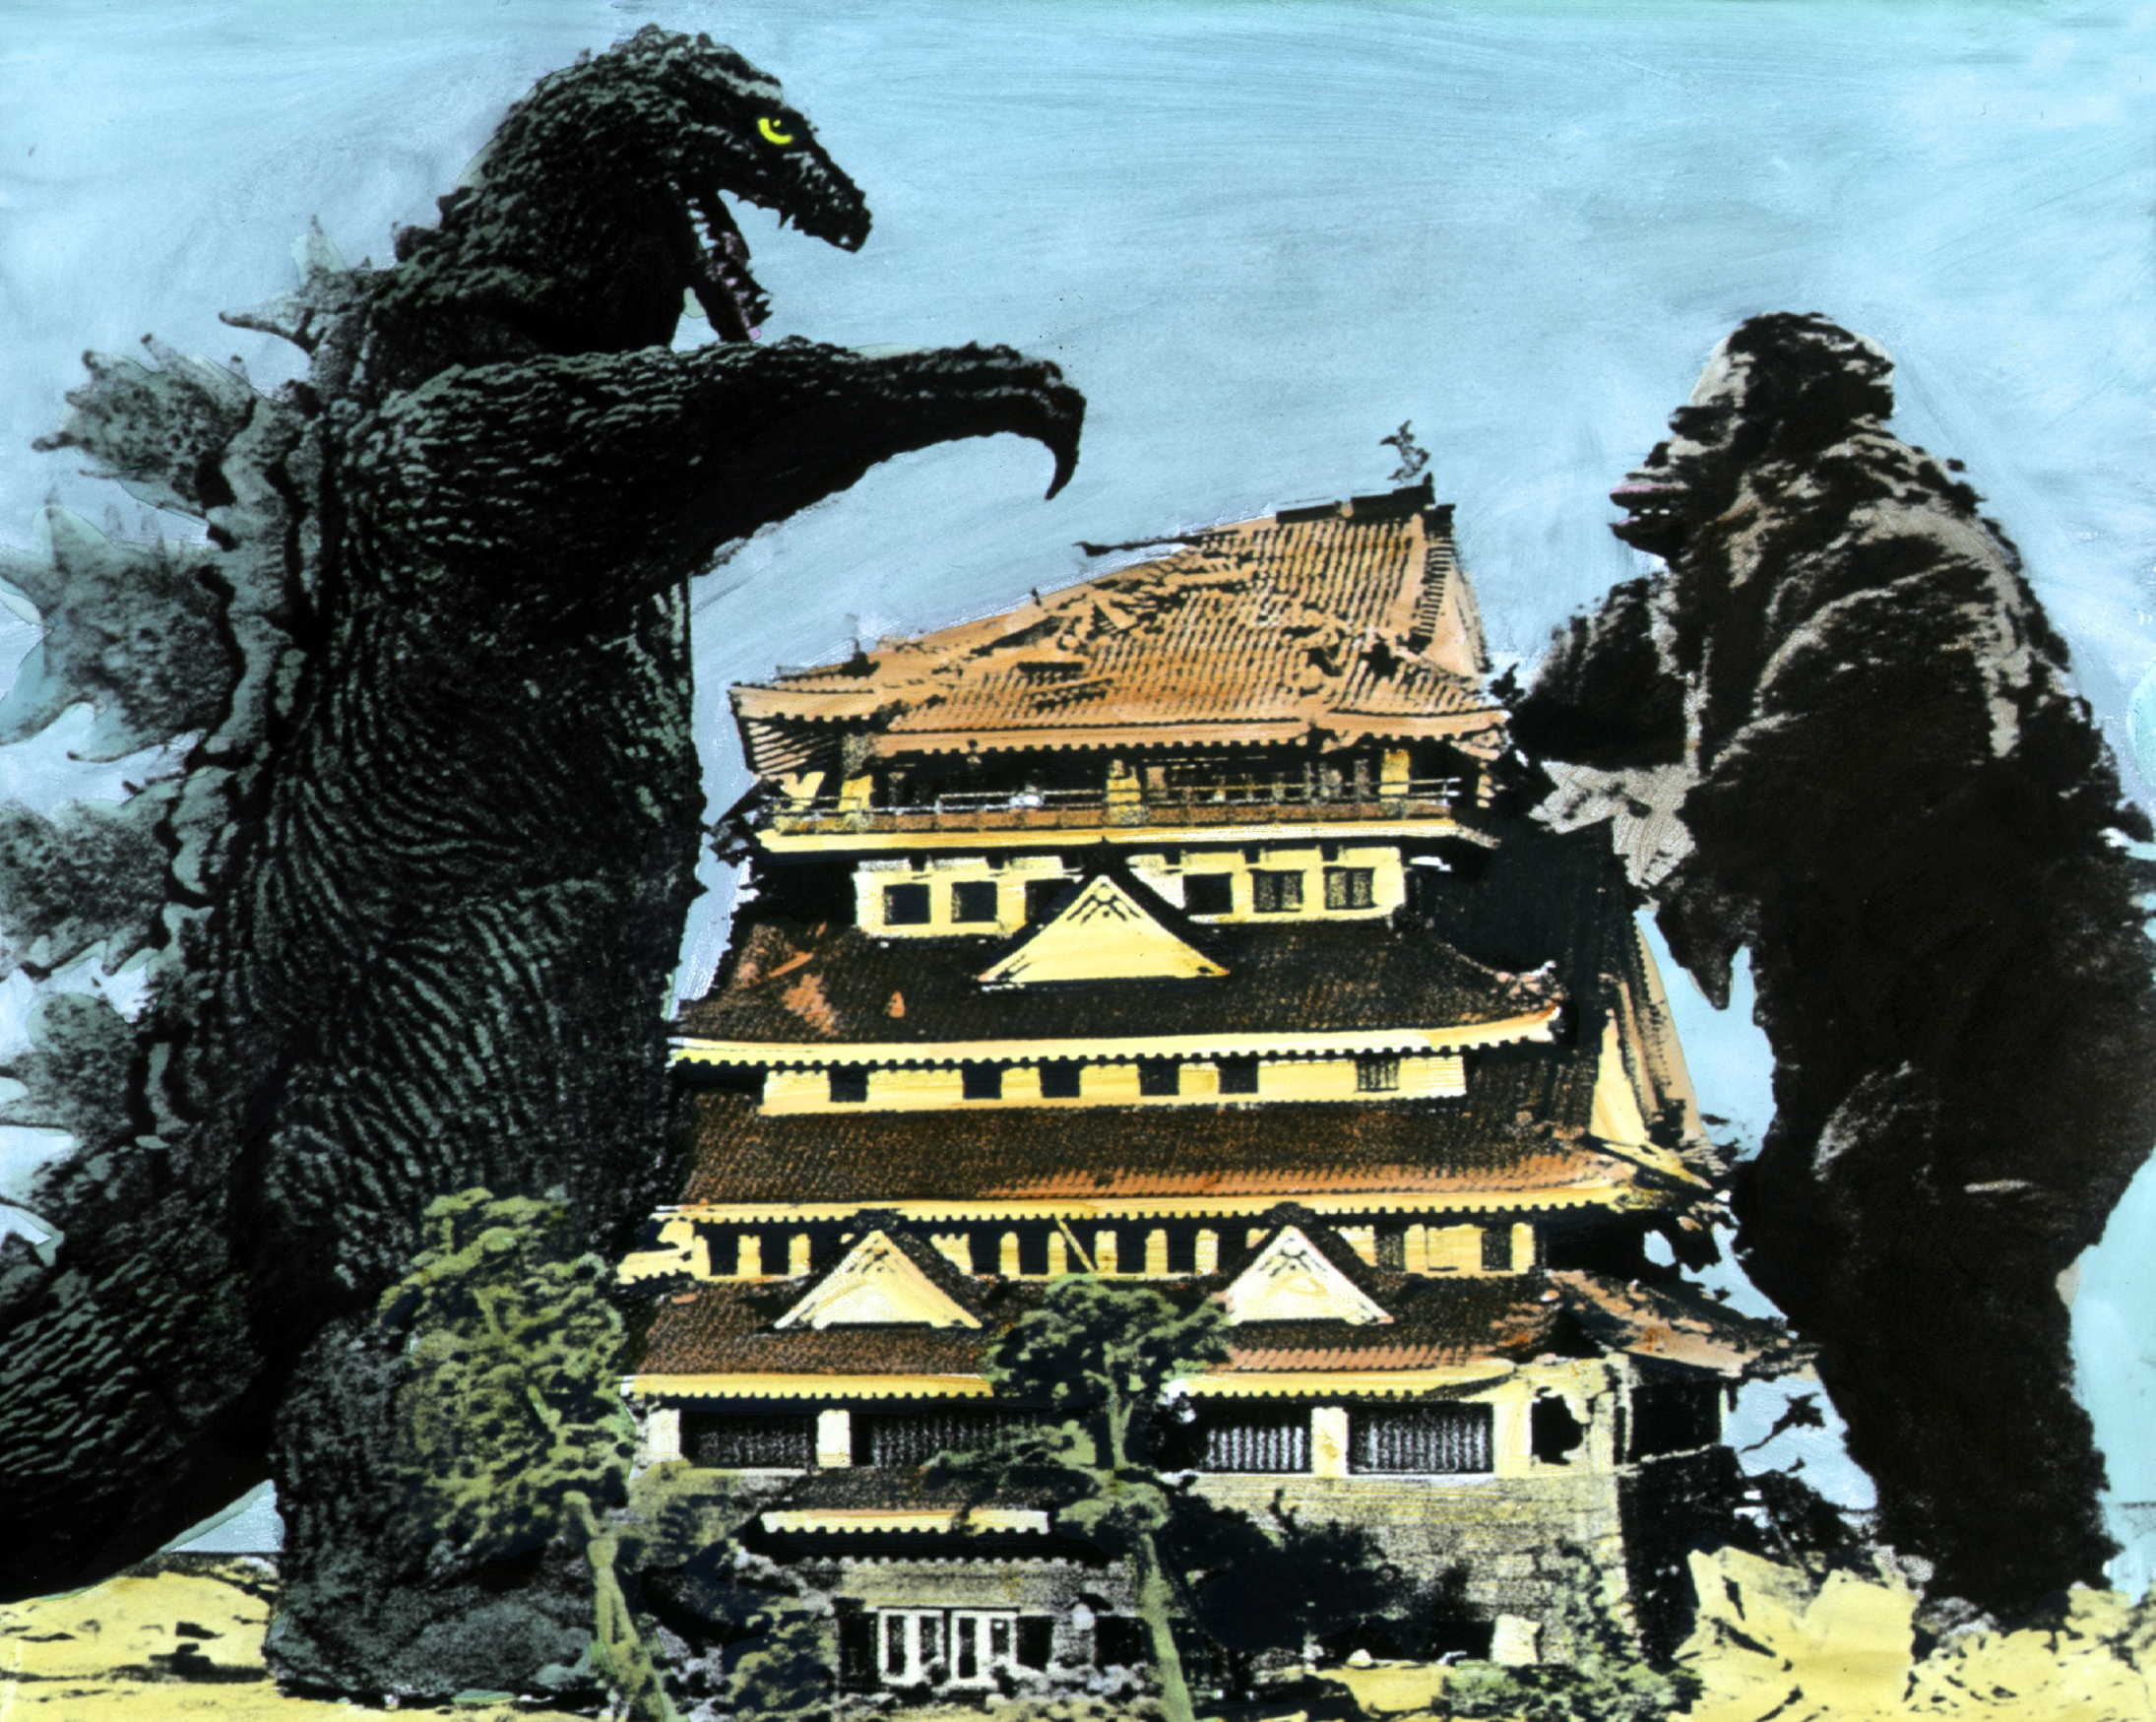 Y a todo esto ¿Quién ganaría en una pelea entre King Kong y Godzilla?